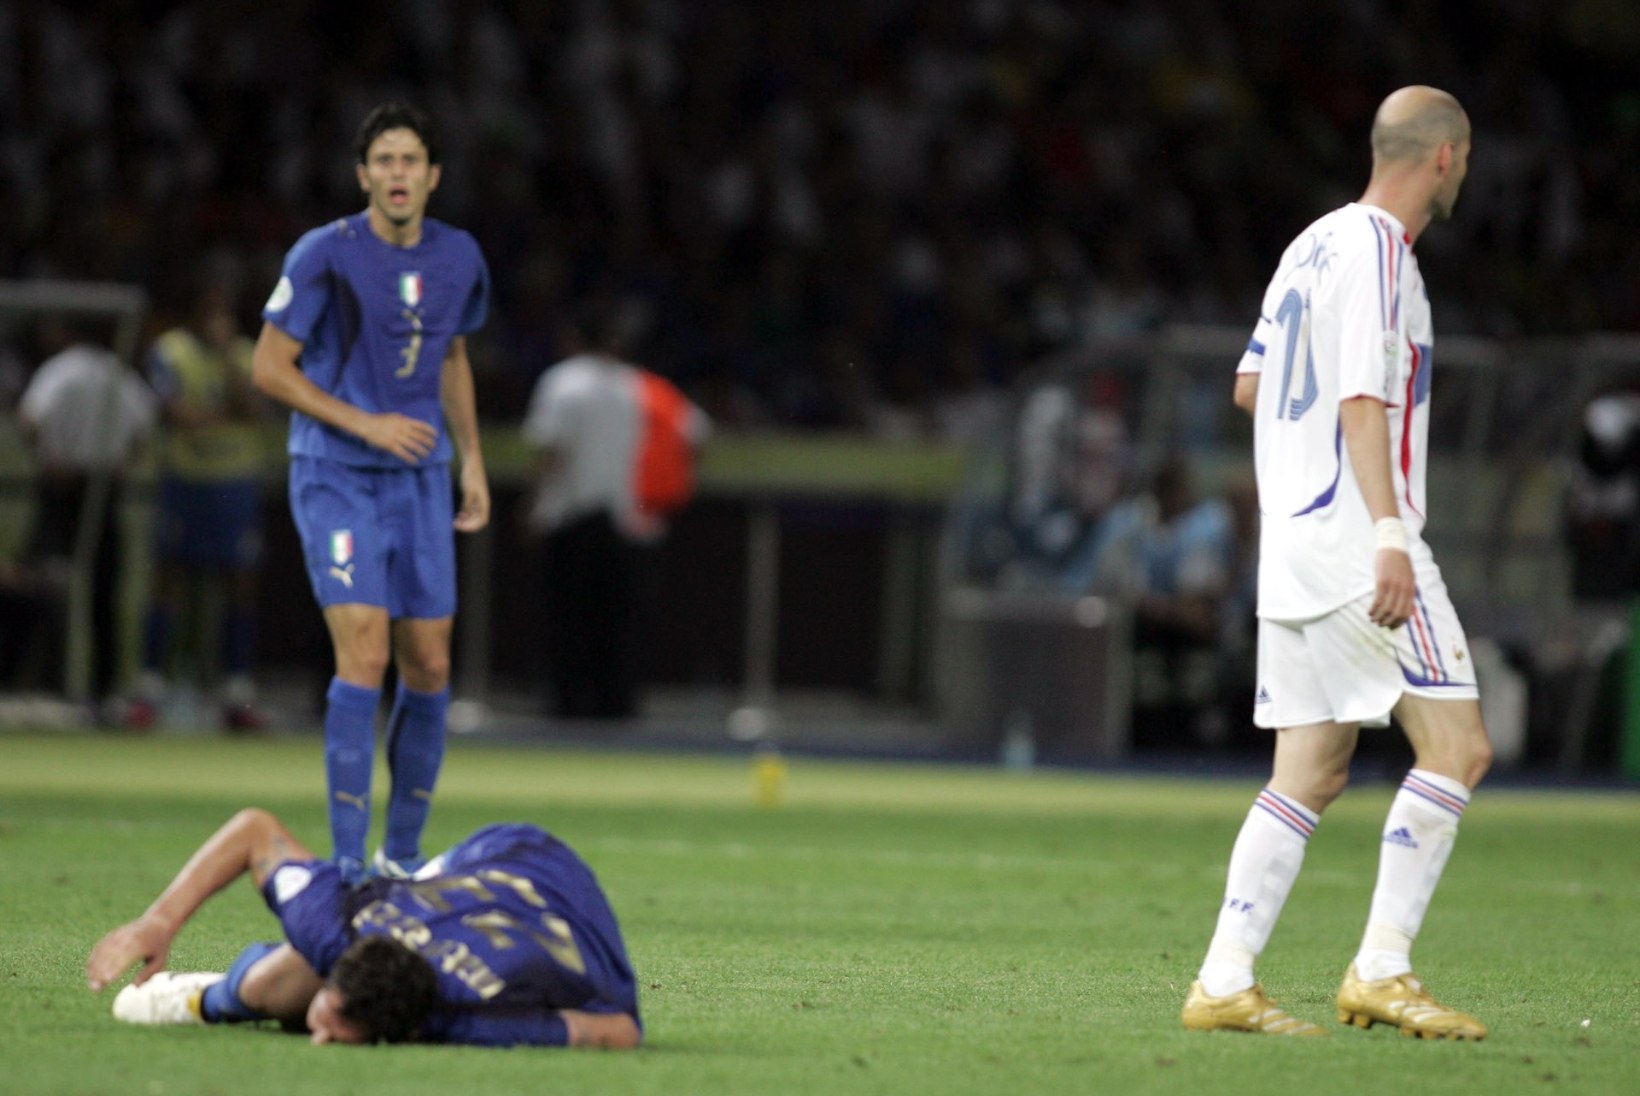 RETROGALERII | Meenuta, kuidas Prantsusmaa viimati finaalis mängides kaotas ja Zidane punase sai